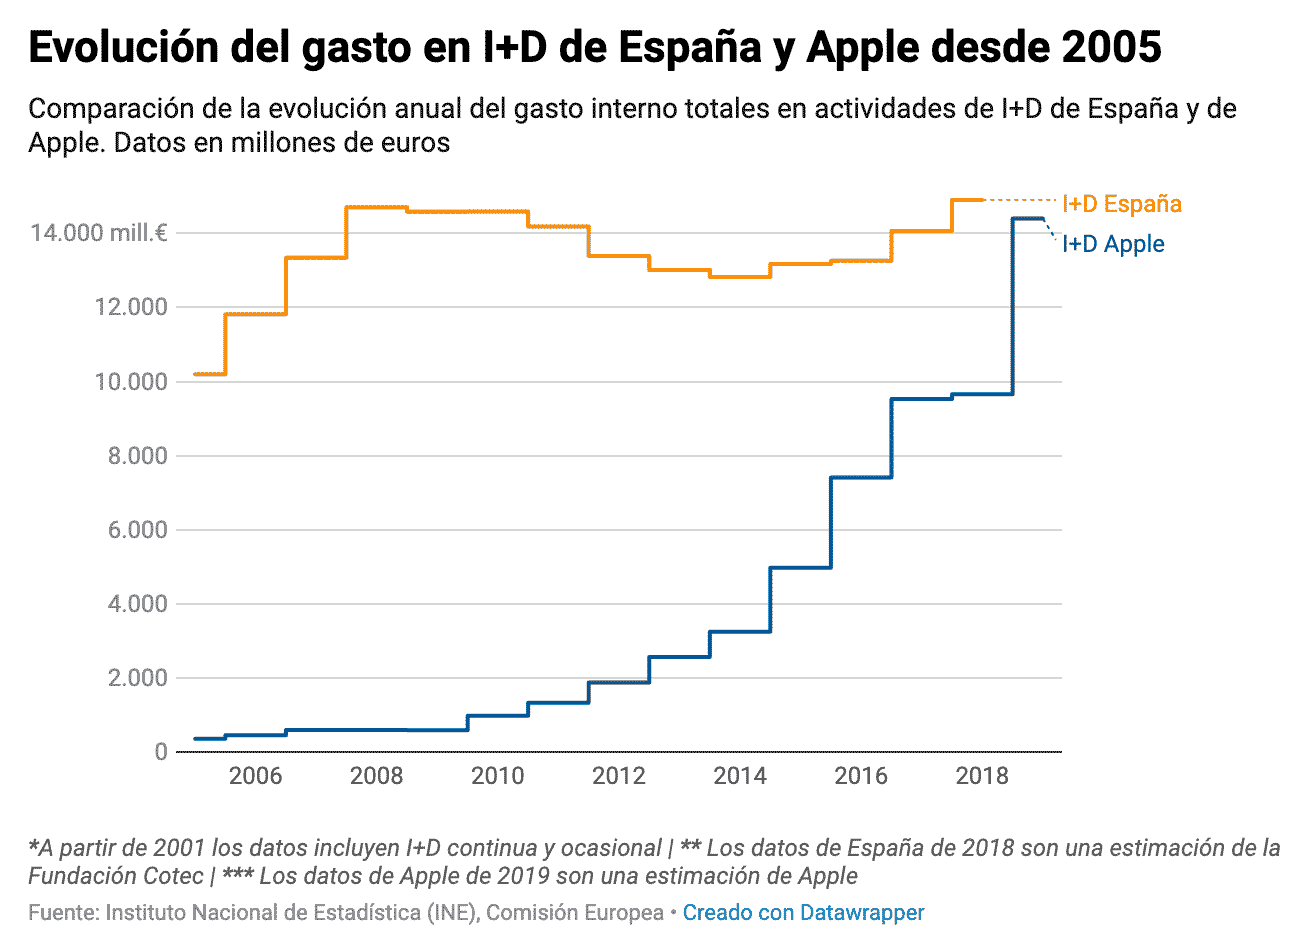 Evolución de la inversión en I+D de Apple y de España